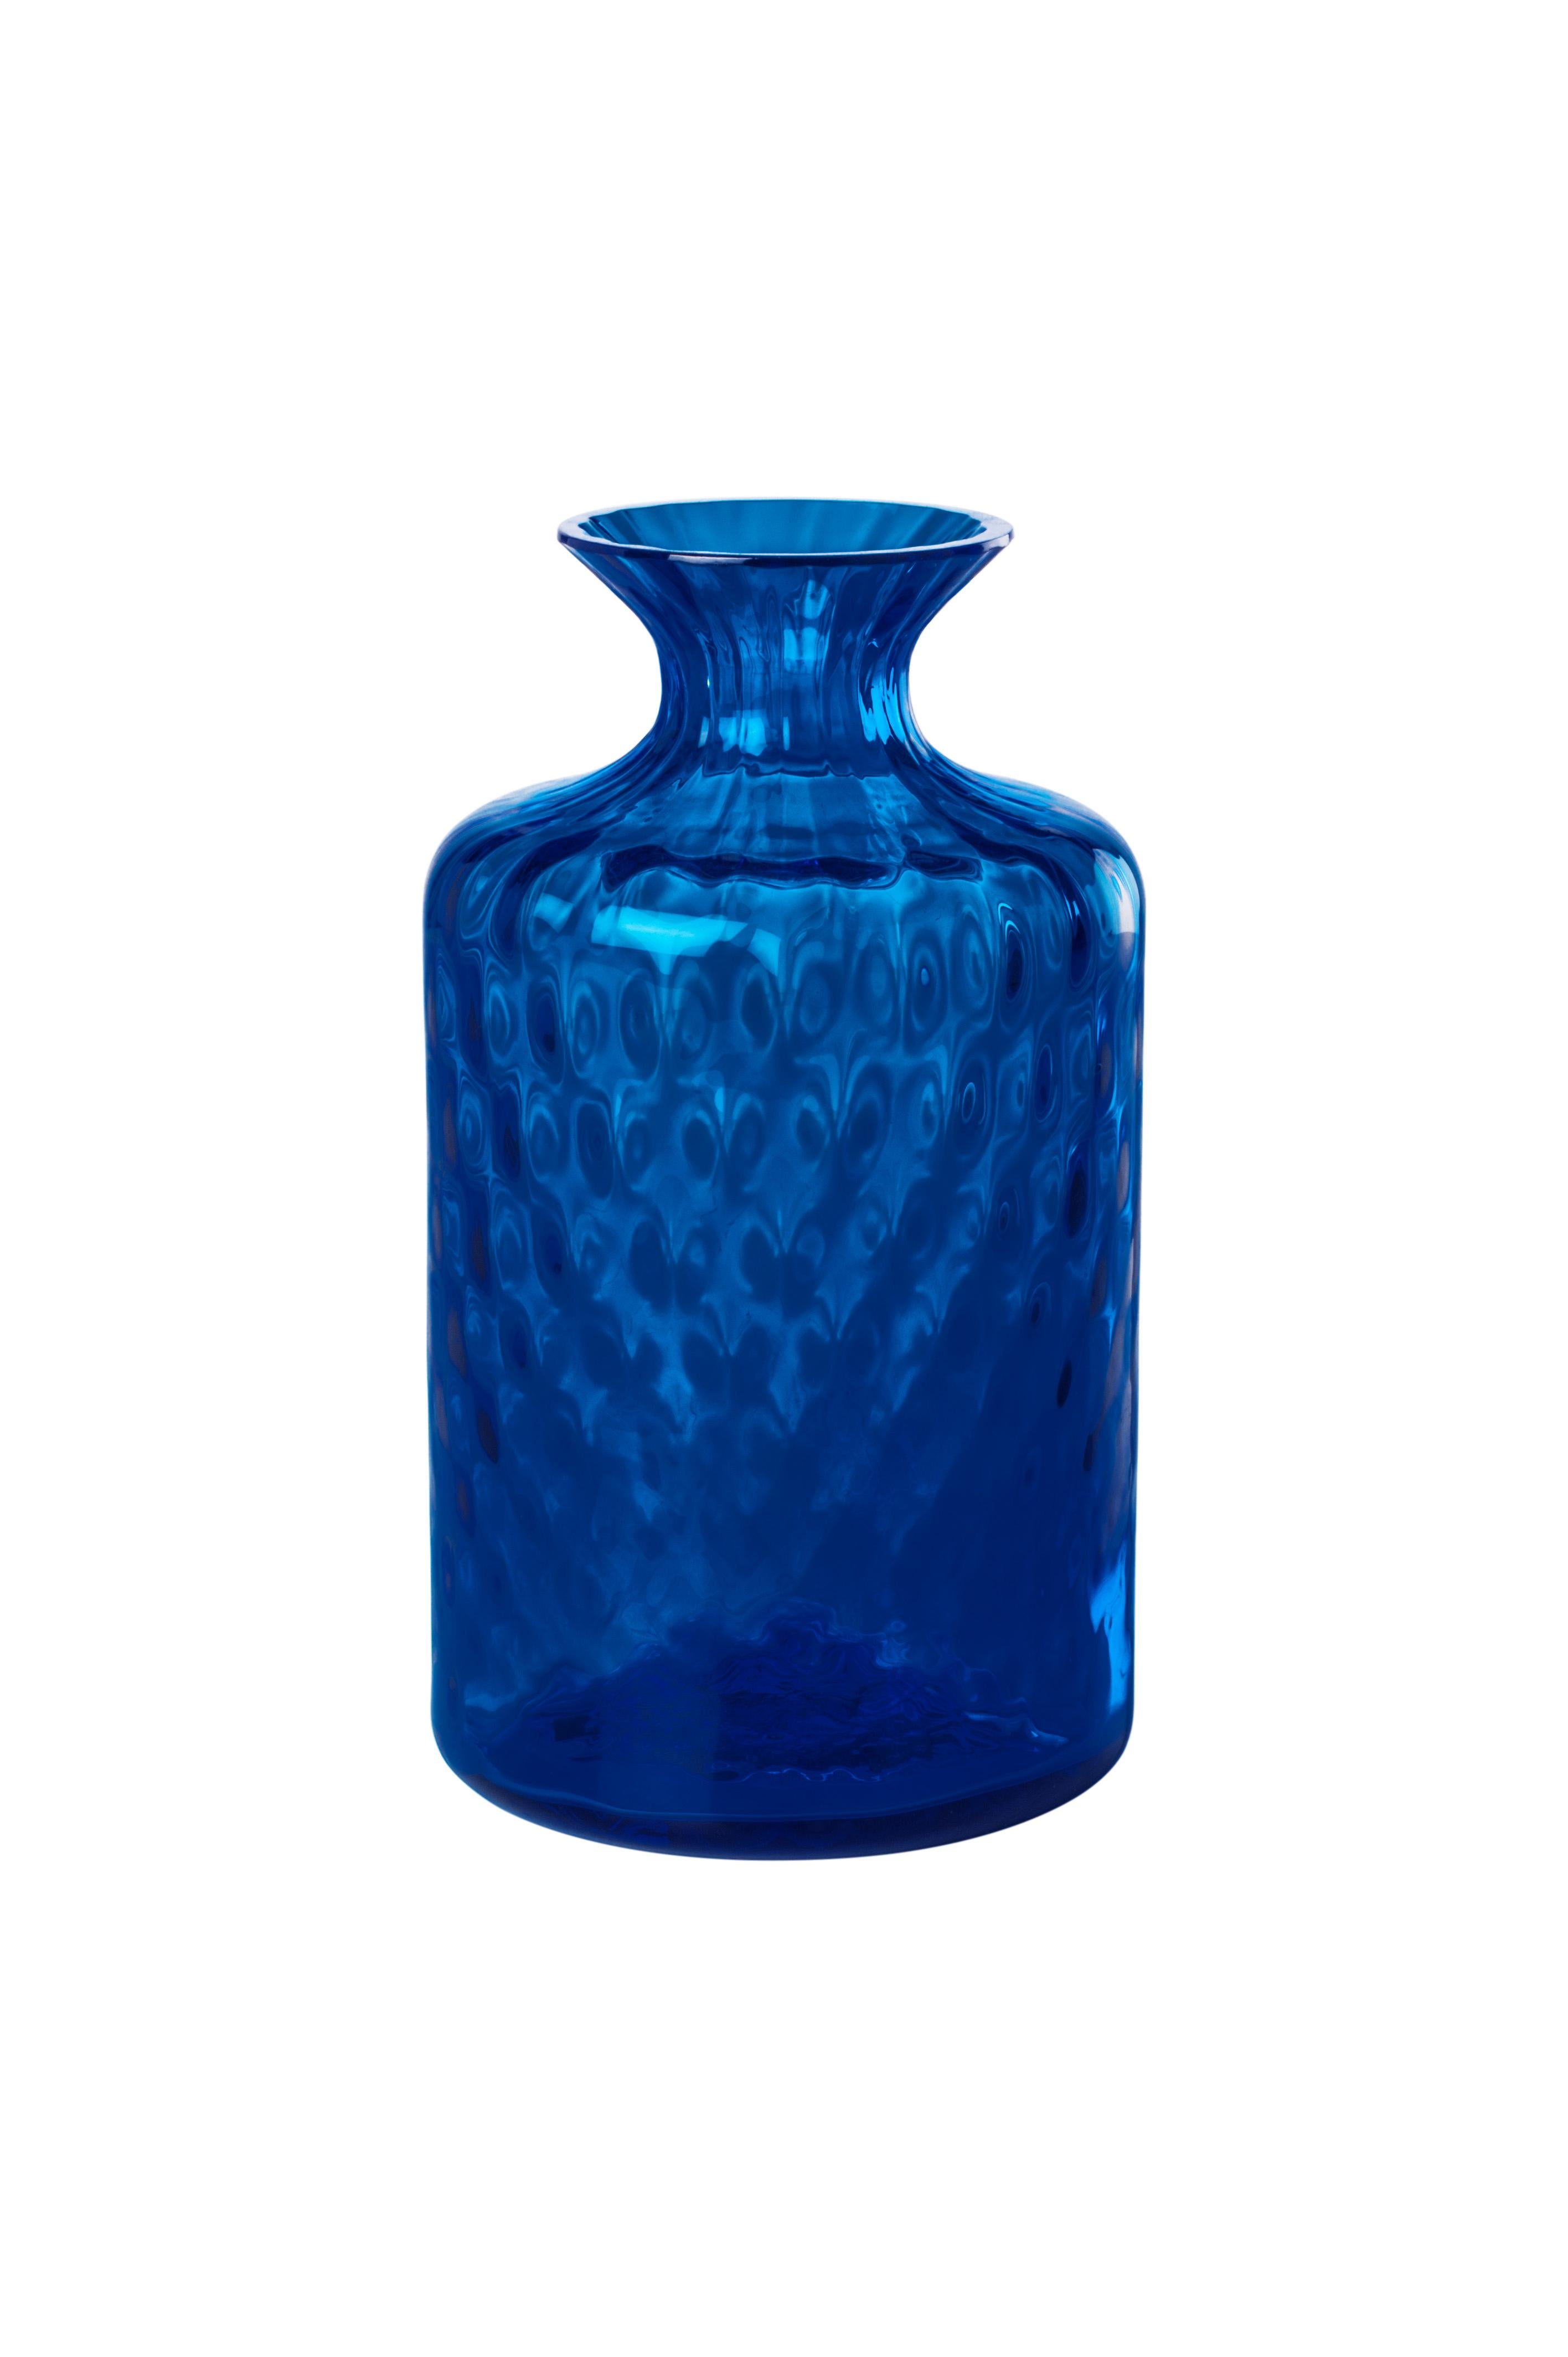 Vase en verre de Venini avec un corps plein et un mince col en forme d'entonnoir avec un motif texturé de forme hexagonale sur la surface du verre en saphir. Présentée dans un verre de couleur saphir et conçue en 2017. Parfait pour la décoration